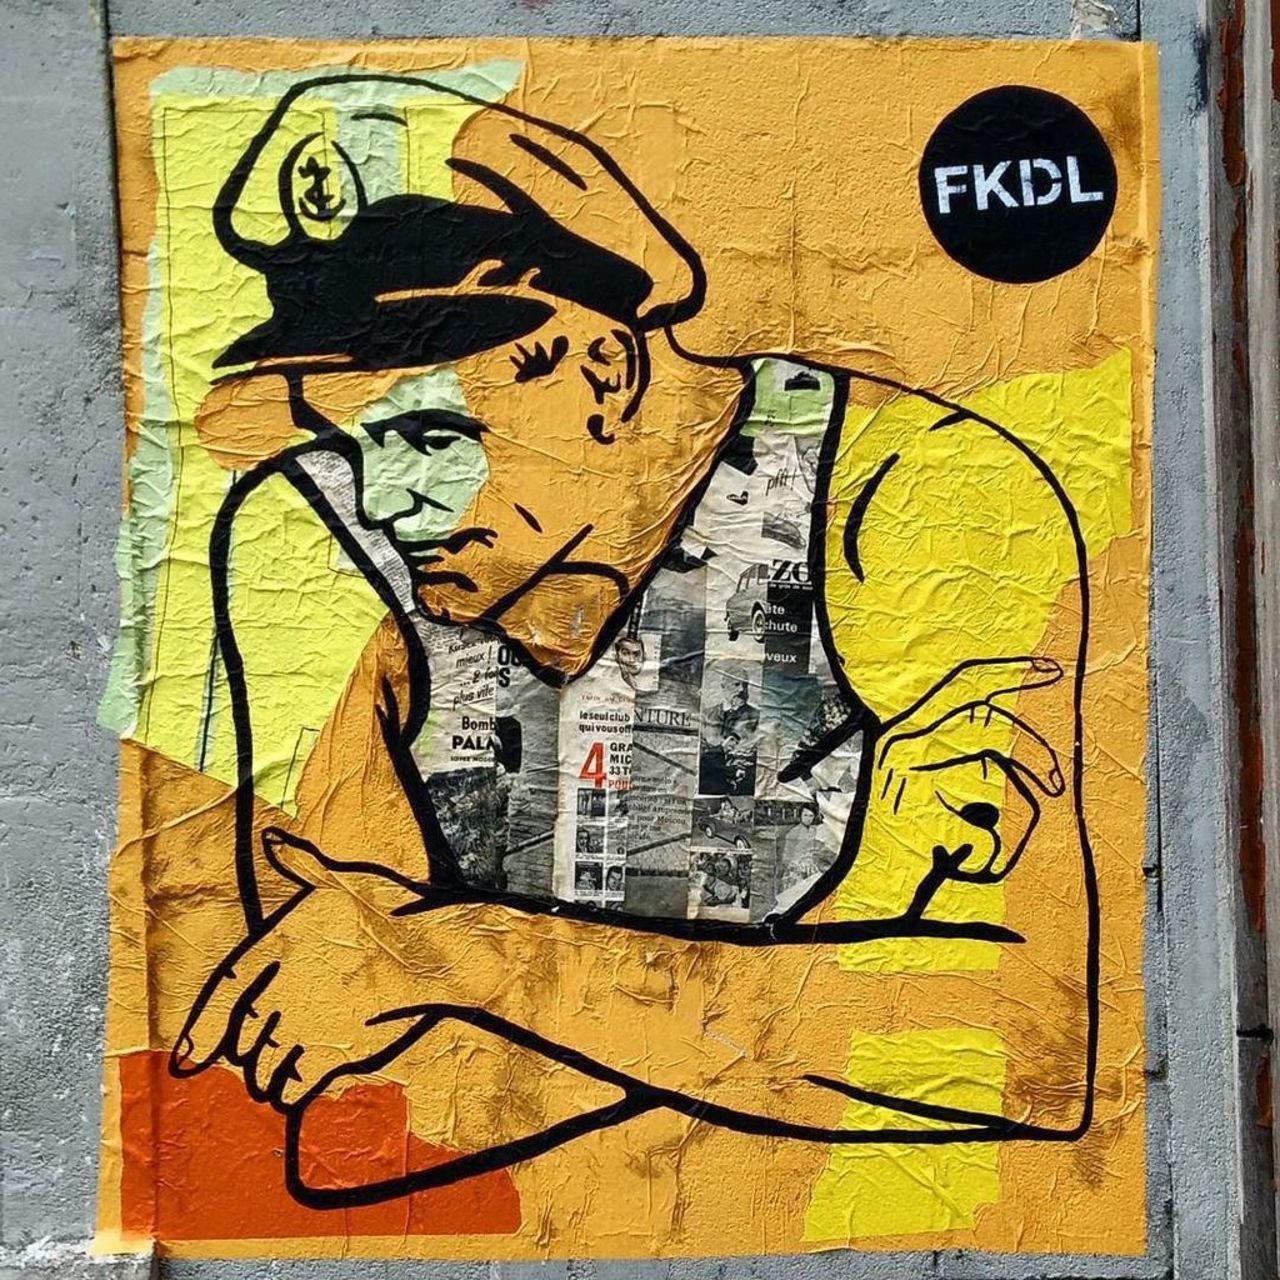 By @fkdl_franck_duval #FKDL

#streetart #streetartparis #parisstreetart #parisgraffiti #graffiti #graffitiart #urba… https://t.co/oGomevDy4c